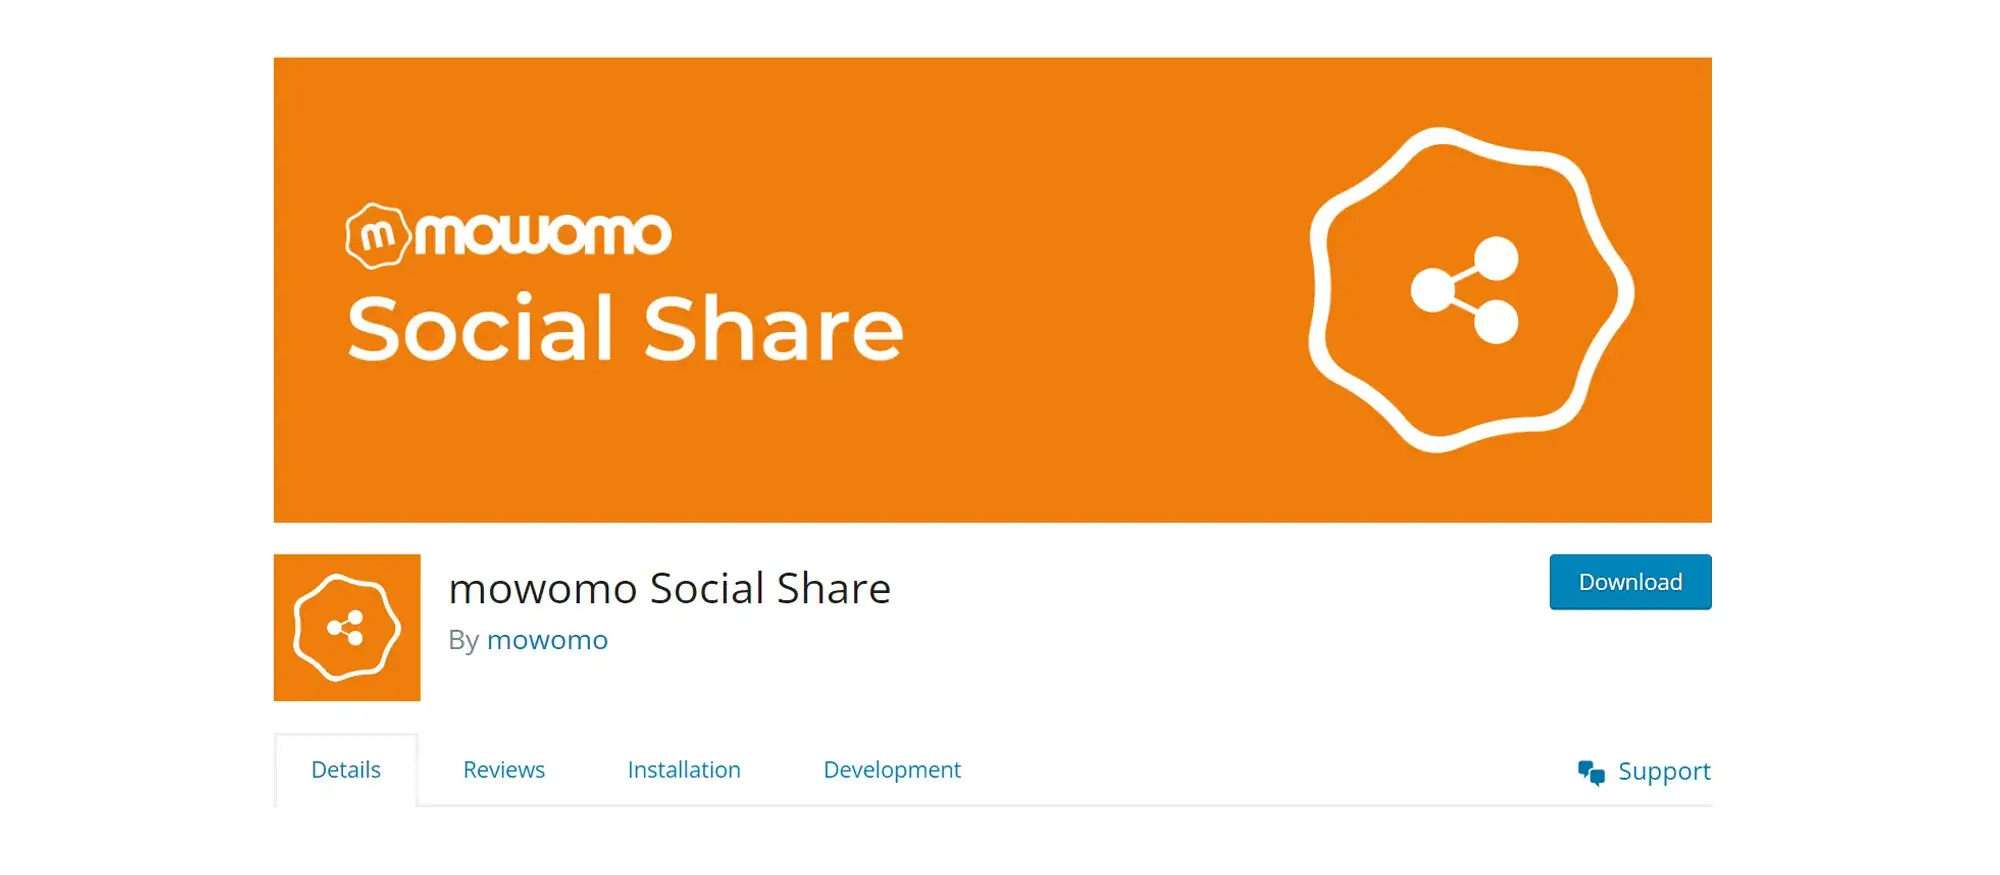 mowomo Social Share